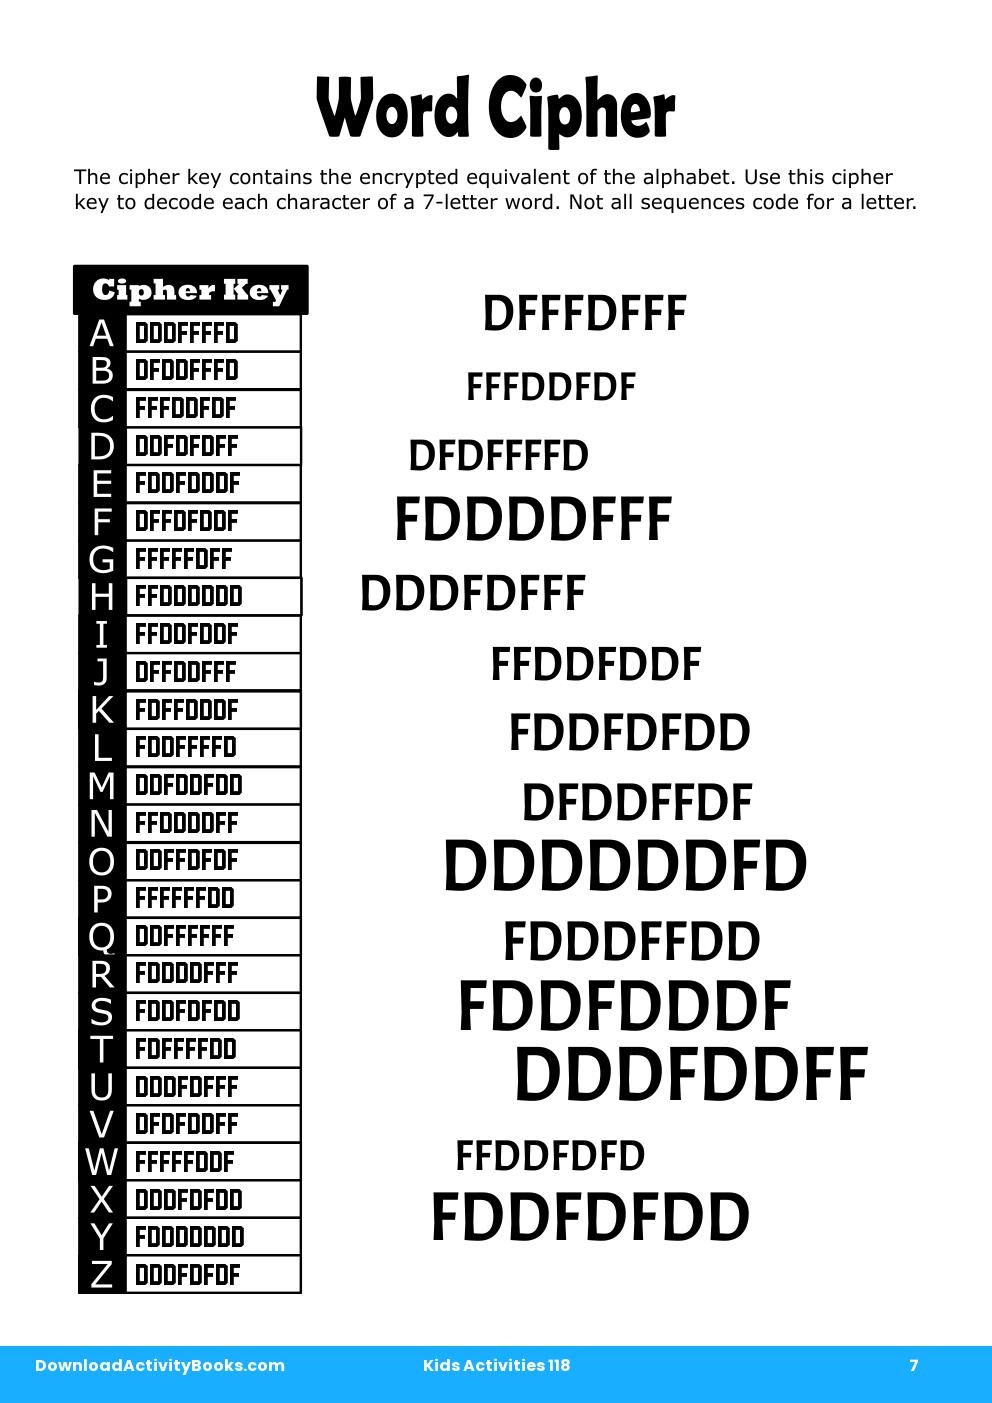 Word Cipher in Kids Activities 118